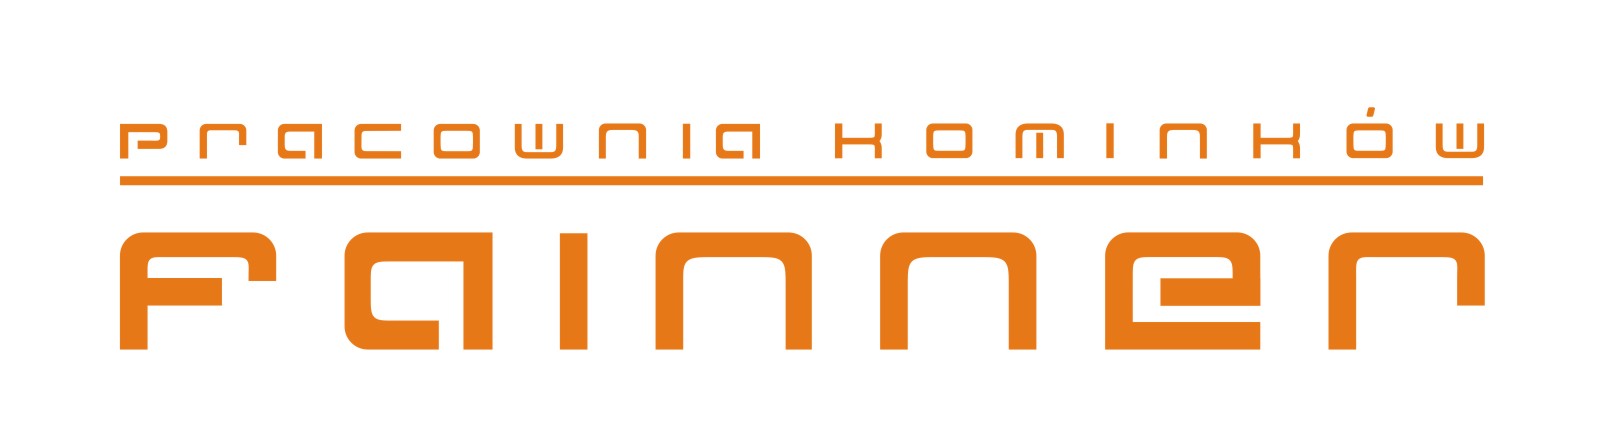 logo FAINNER